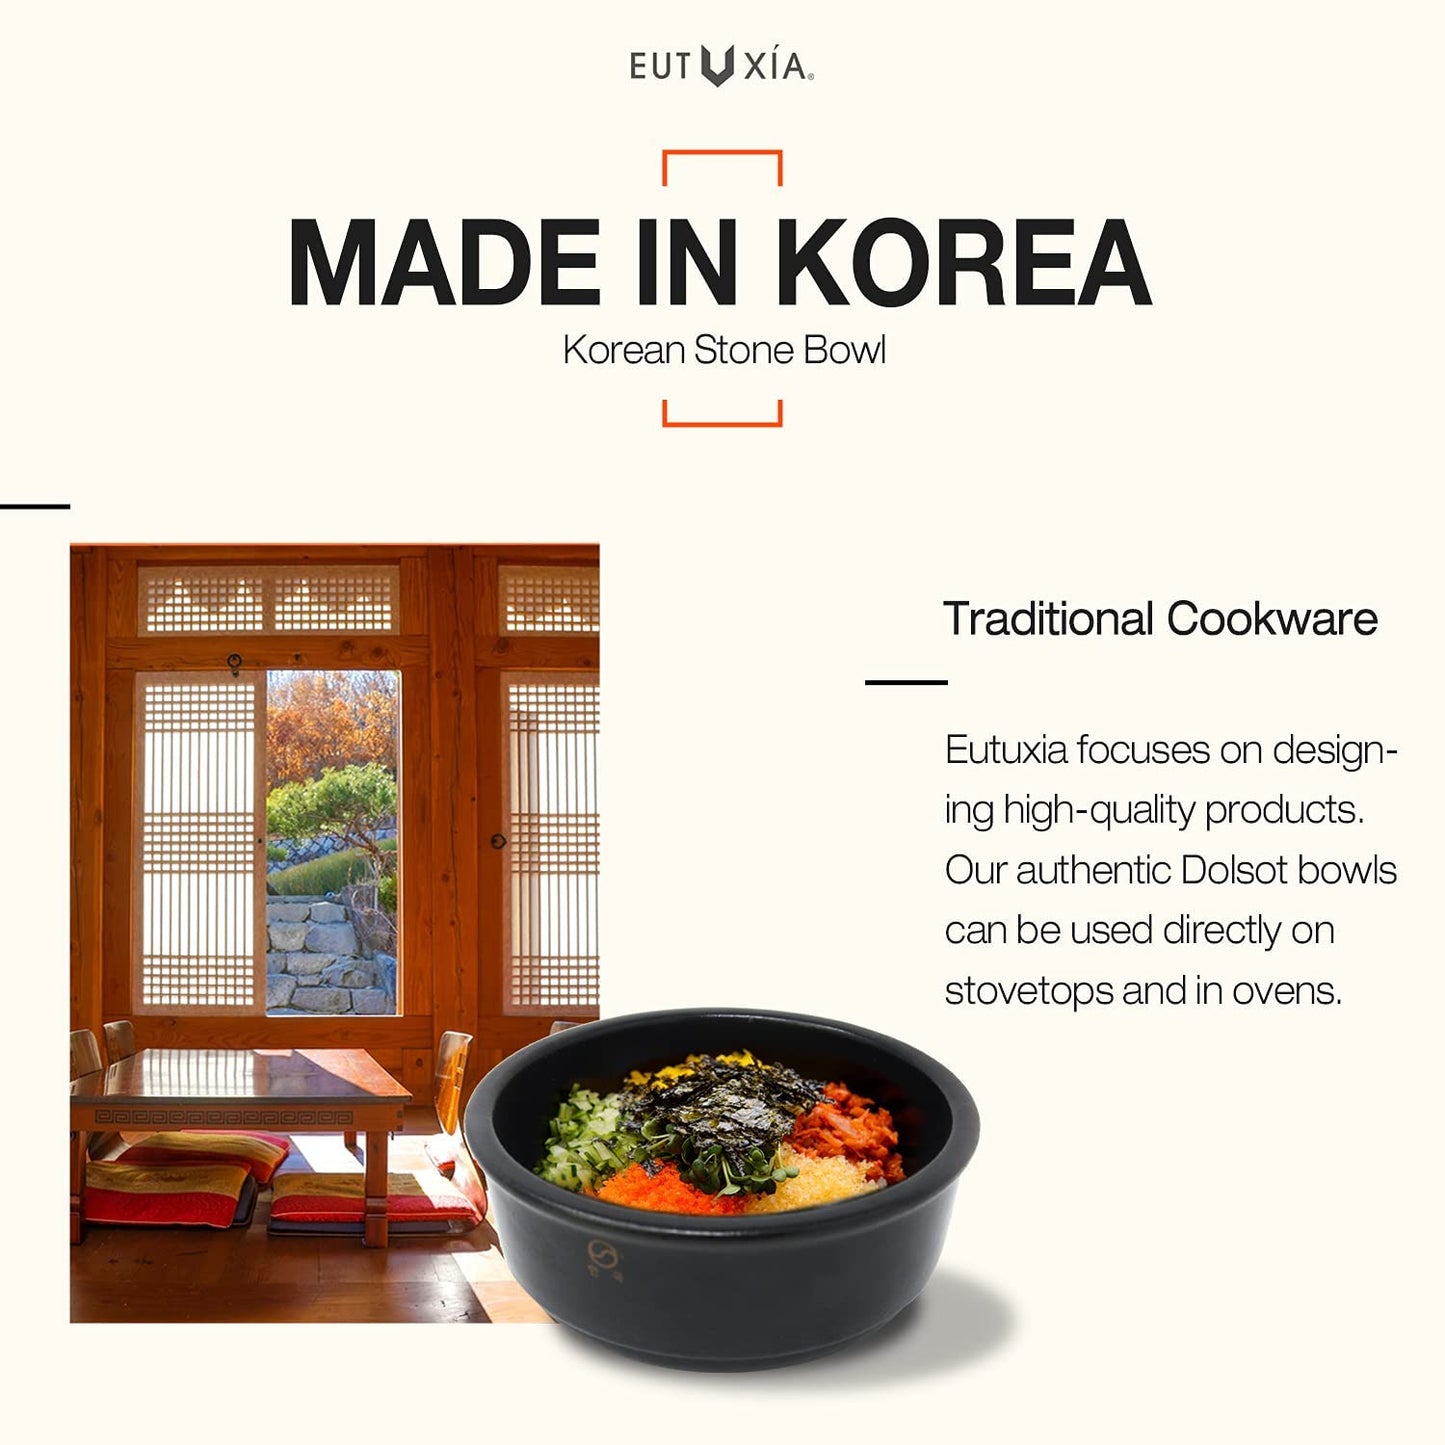 Eutuxia Korean Stone Bowl Dolsot Trivet Coaster. [Large, Black Plastic]